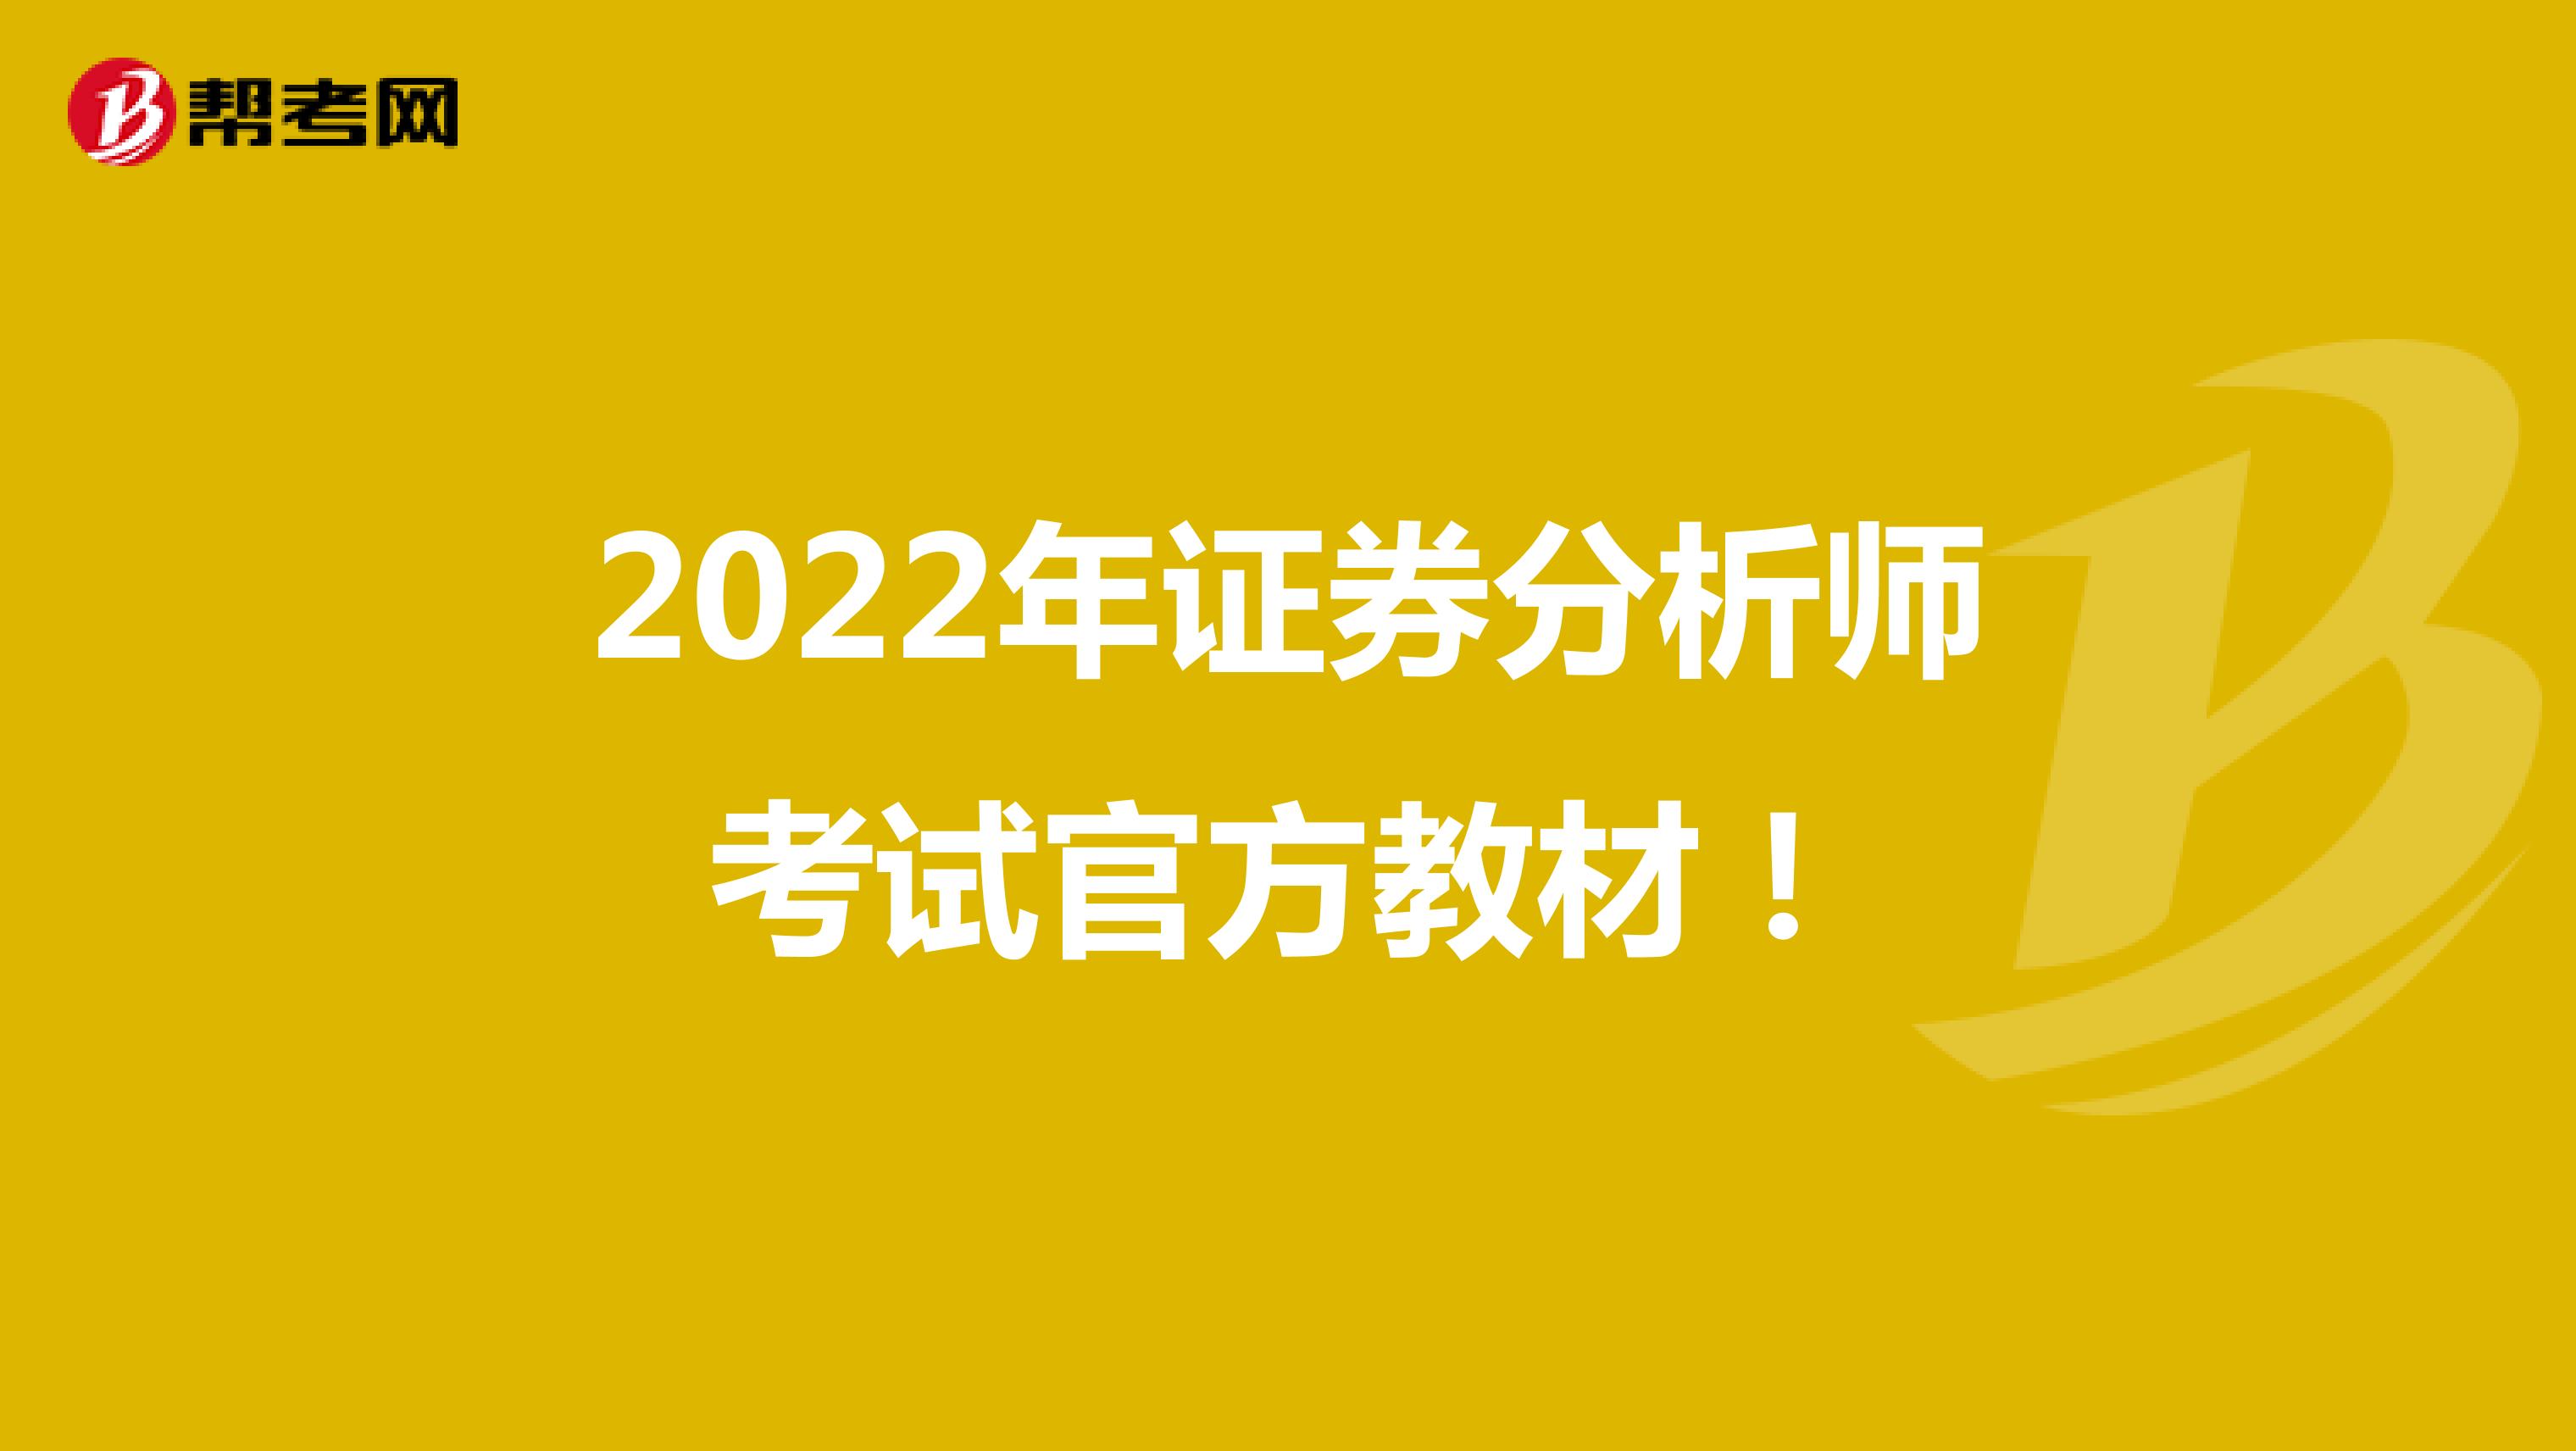 2022年证券分析师考试官方教材！